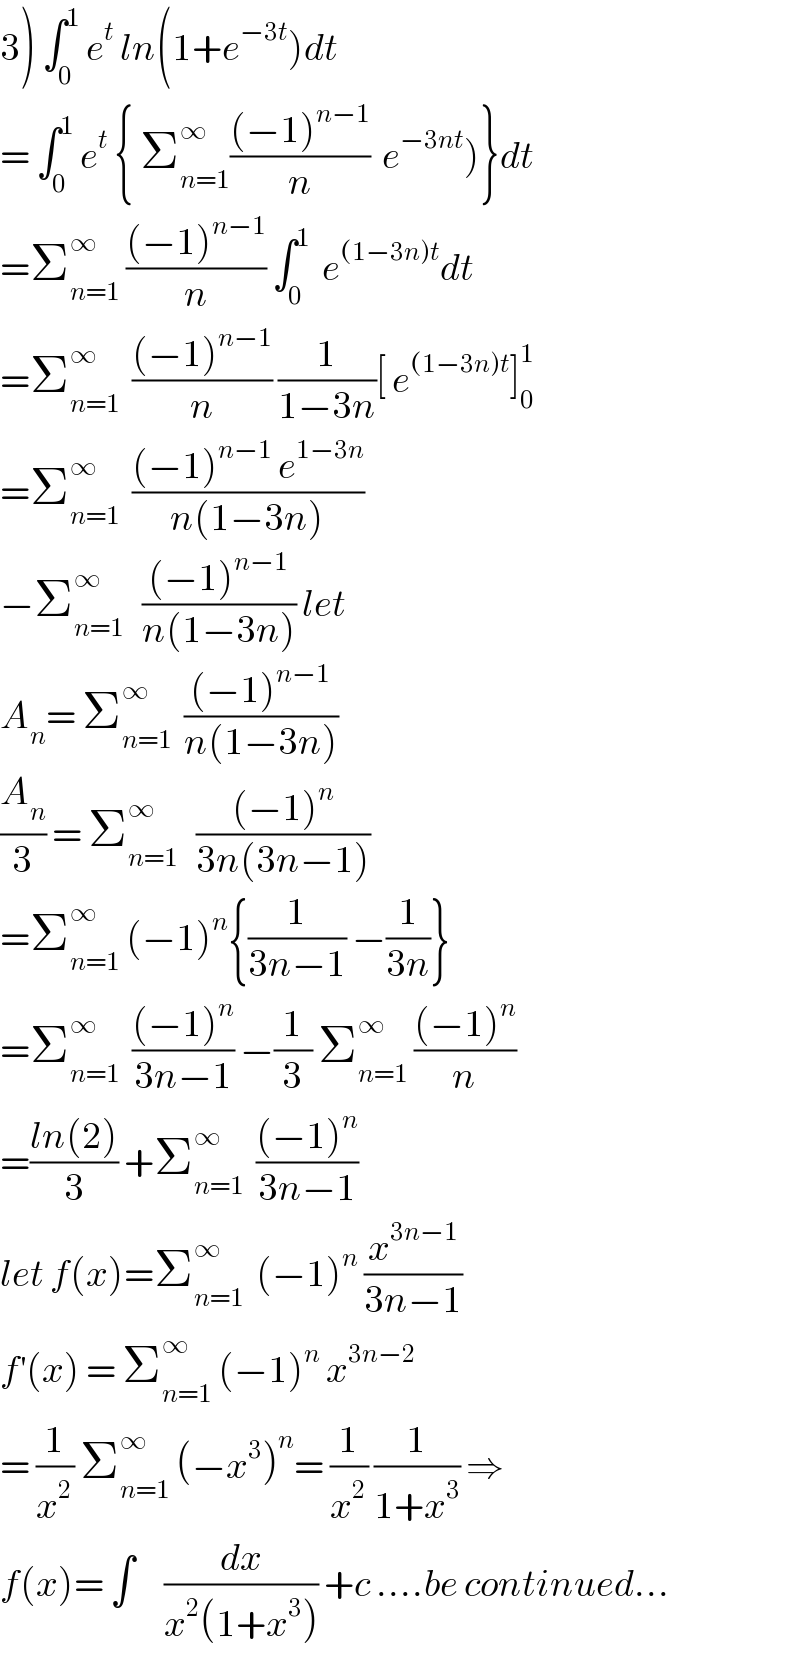 3) ∫_0 ^1  e^t  ln(1+e^(−3t) )dt  = ∫_0 ^1  e^t  { Σ_(n=1) ^∞ (((−1)^(n−1) )/n)  e^(−3nt) )}dt  =Σ_(n=1) ^∞  (((−1)^(n−1) )/n) ∫_0 ^1   e^((1−3n)t) dt  =Σ_(n=1) ^∞   (((−1)^(n−1) )/n) (1/(1−3n))[ e^((1−3n)t) ]_0 ^1   =Σ_(n=1) ^∞   (((−1)^(n−1)  e^(1−3n) )/(n(1−3n)))  −Σ_(n=1) ^∞    (((−1)^(n−1) )/(n(1−3n))) let  A_n = Σ_(n=1) ^∞   (((−1)^(n−1) )/(n(1−3n)))  (A_n /3) = Σ_(n=1) ^∞    (((−1)^n )/(3n(3n−1)))  =Σ_(n=1) ^∞  (−1)^n {(1/(3n−1)) −(1/(3n))}  =Σ_(n=1) ^(∞ )   (((−1)^n )/(3n−1)) −(1/3) Σ_(n=1) ^∞  (((−1)^n )/n)  =((ln(2))/3) +Σ_(n=1) ^∞   (((−1)^n )/(3n−1))  let f(x)=Σ_(n=1) ^∞   (−1)^n  (x^(3n−1) /(3n−1))  f^′ (x) = Σ_(n=1) ^∞  (−1)^n  x^(3n−2)   = (1/x^2 ) Σ_(n=1) ^∞  (−x^3 )^n = (1/x^2 ) (1/(1+x^3 )) ⇒  f(x)= ∫     (dx/(x^2 (1+x^3 ))) +c ....be continued...  